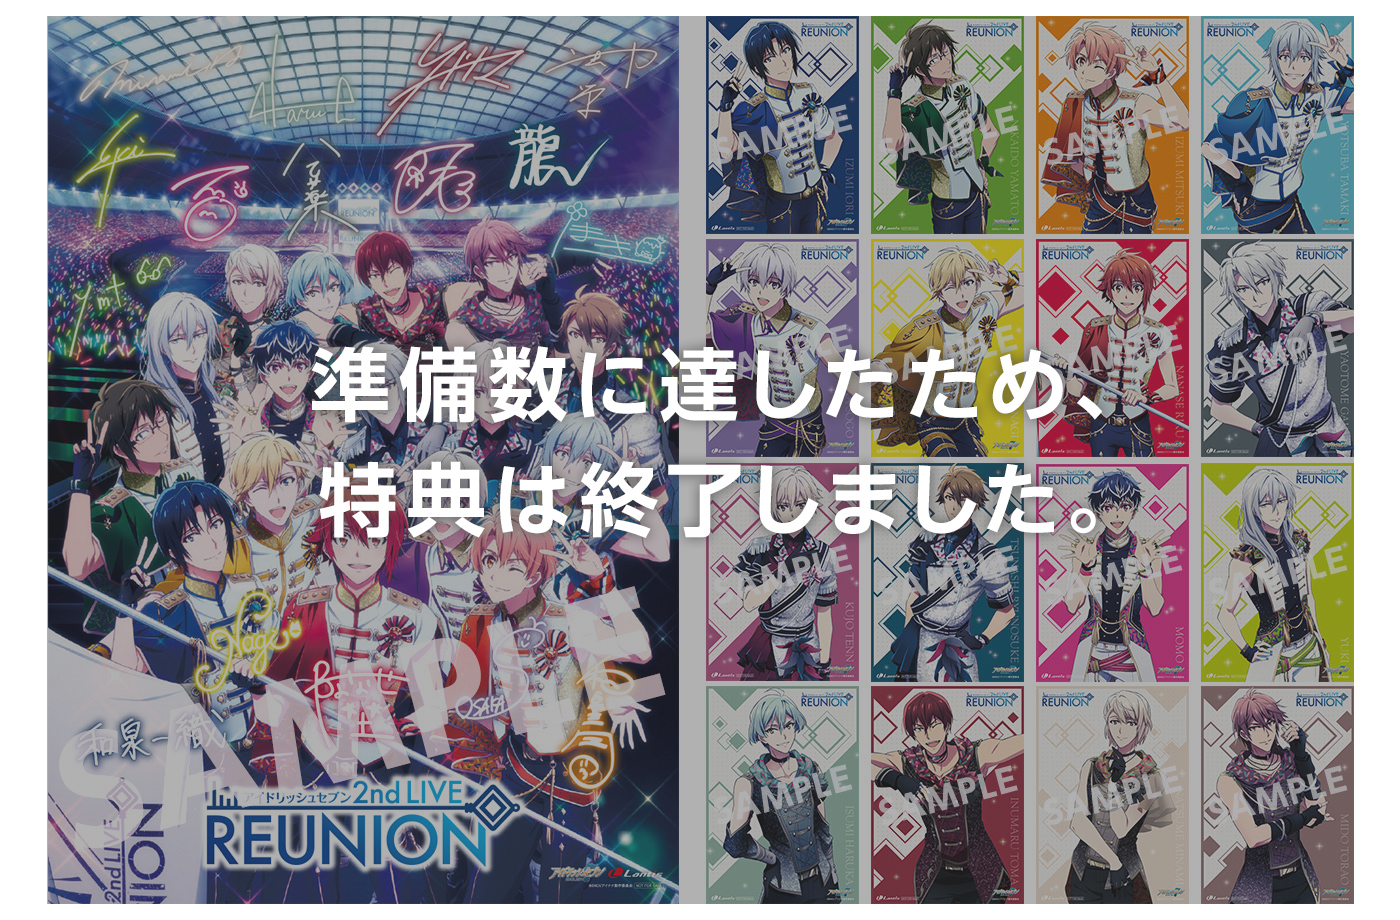 アイドリッシュセブン 2nd LIVE『REUNION』Blu-ray BOX -Limited Edition-